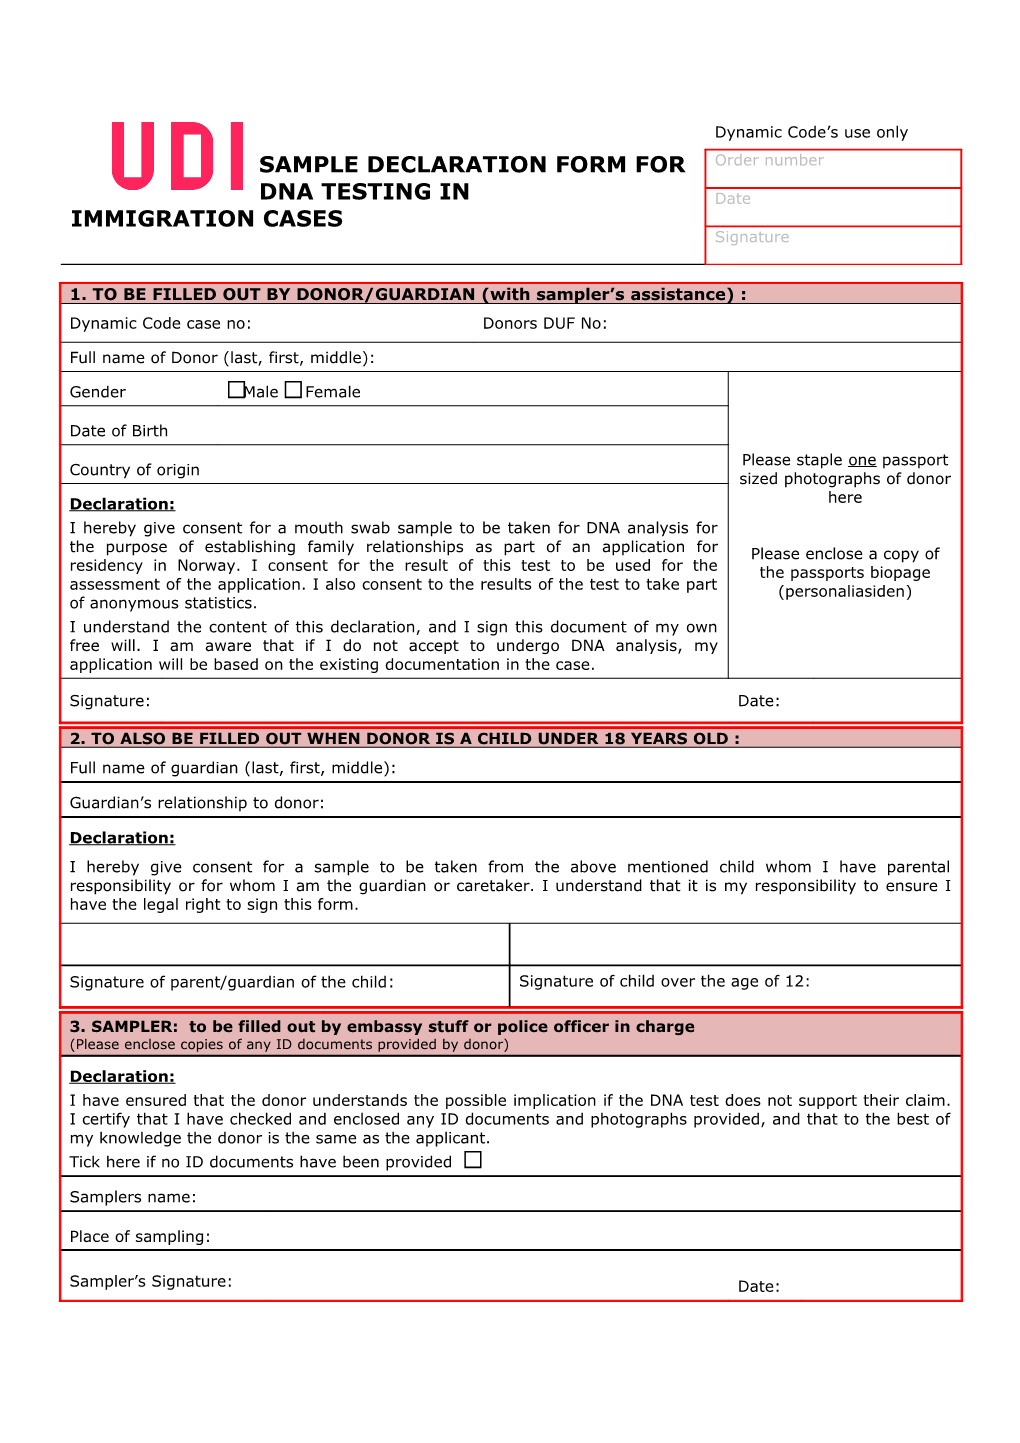 Sample Declaration Form for Dna Testing